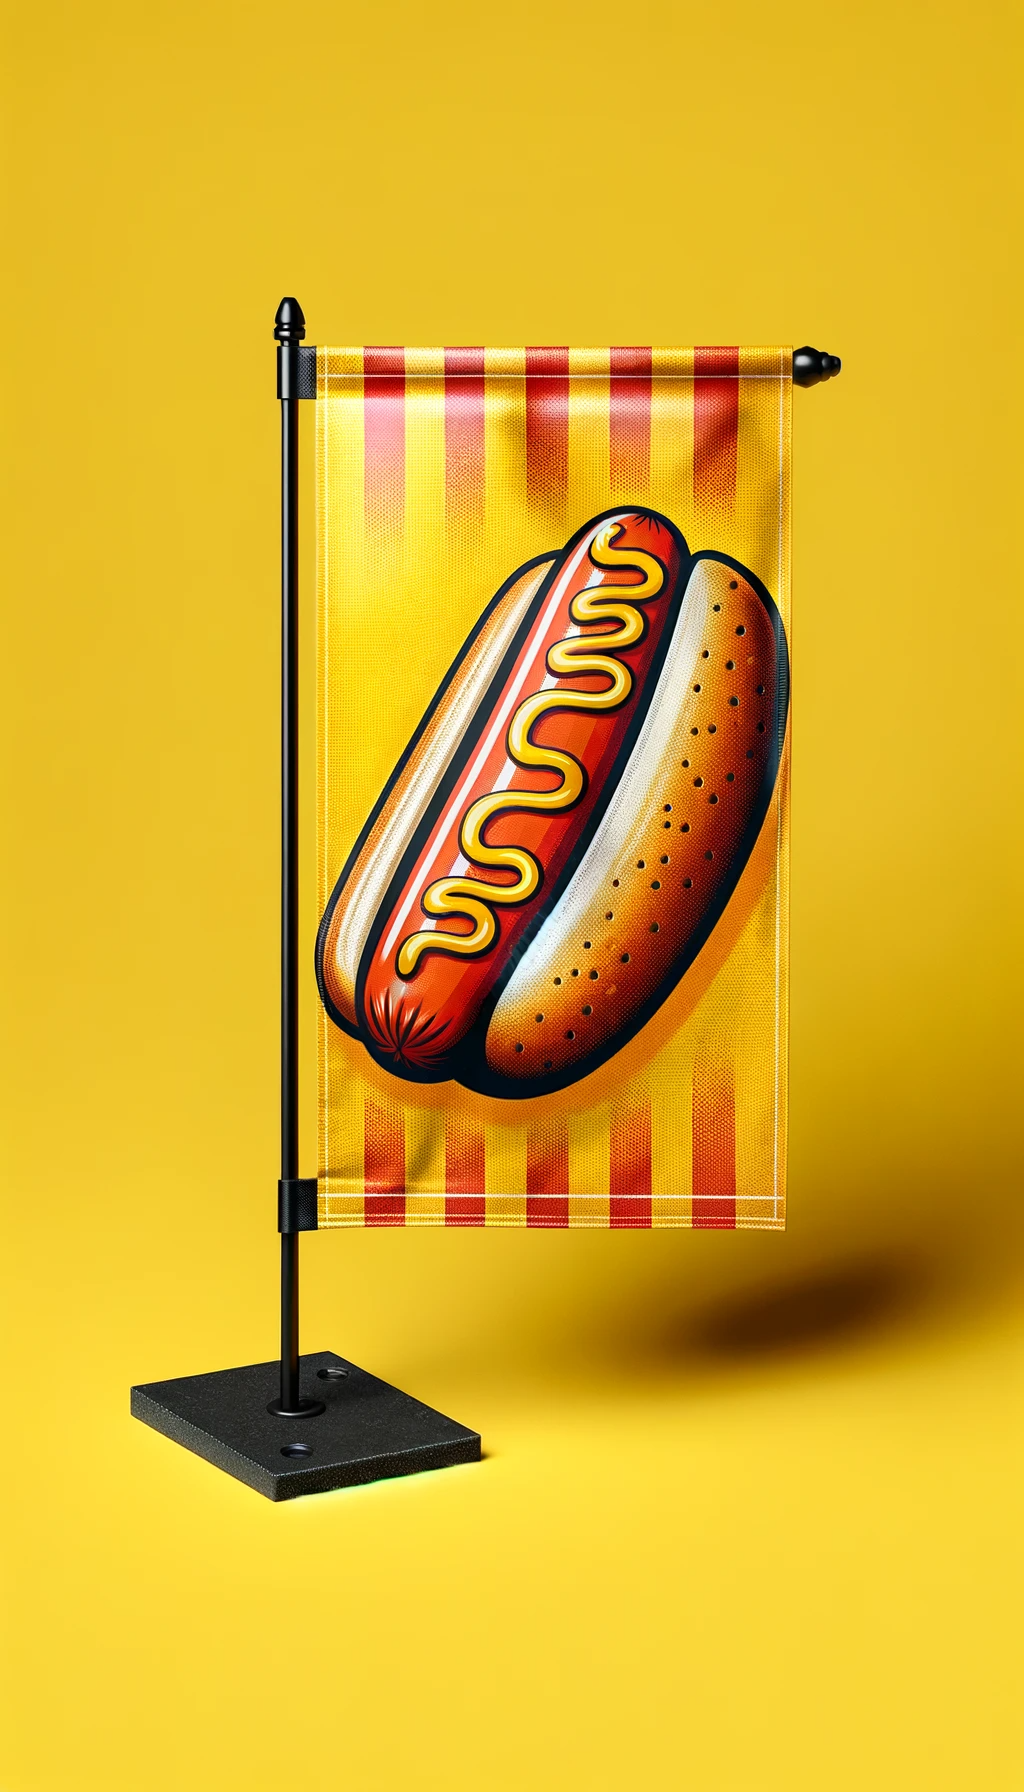 une hot dog brillant sur fond jaune bariolé